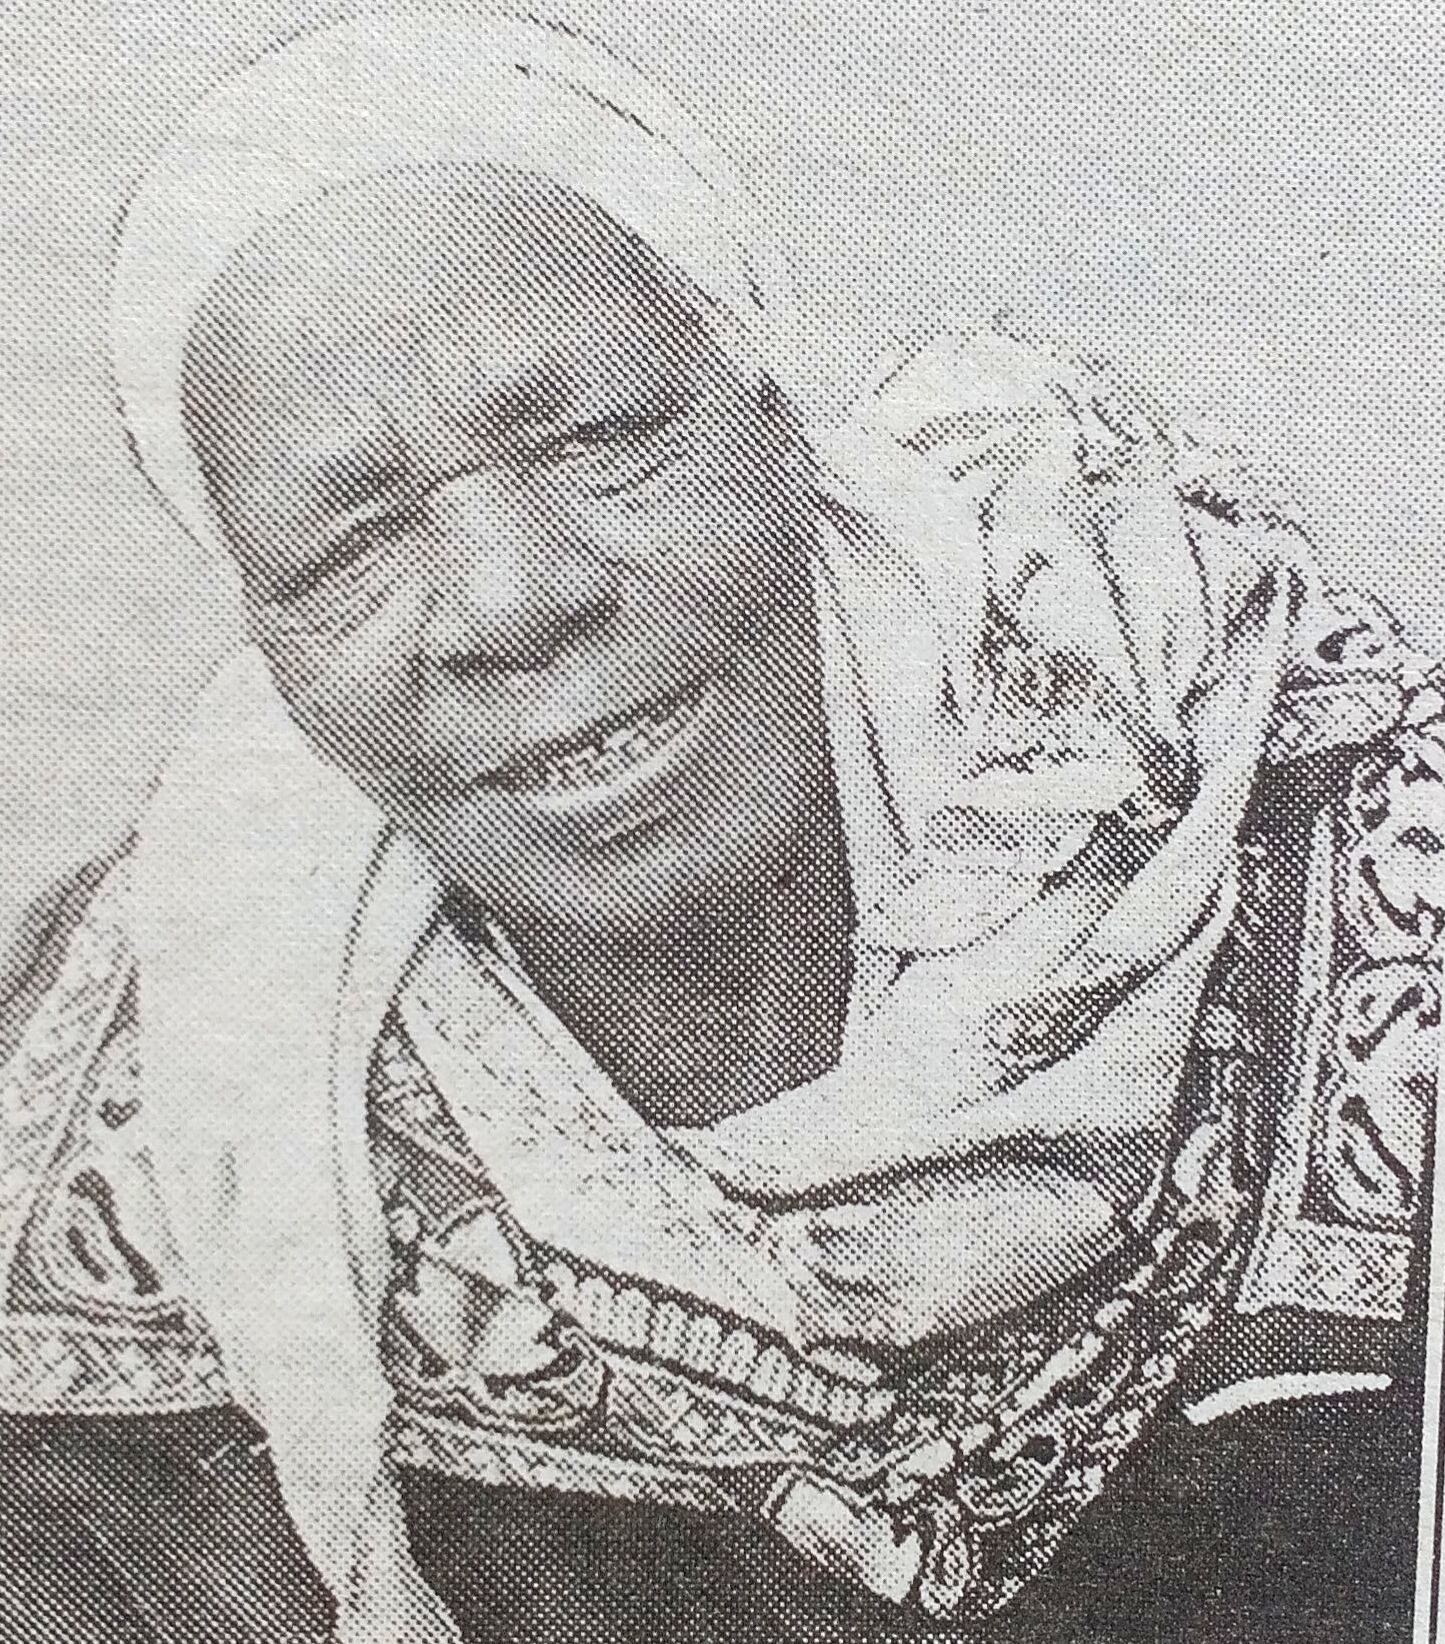 Obituary Image of Sibia Kerubo Ombaba